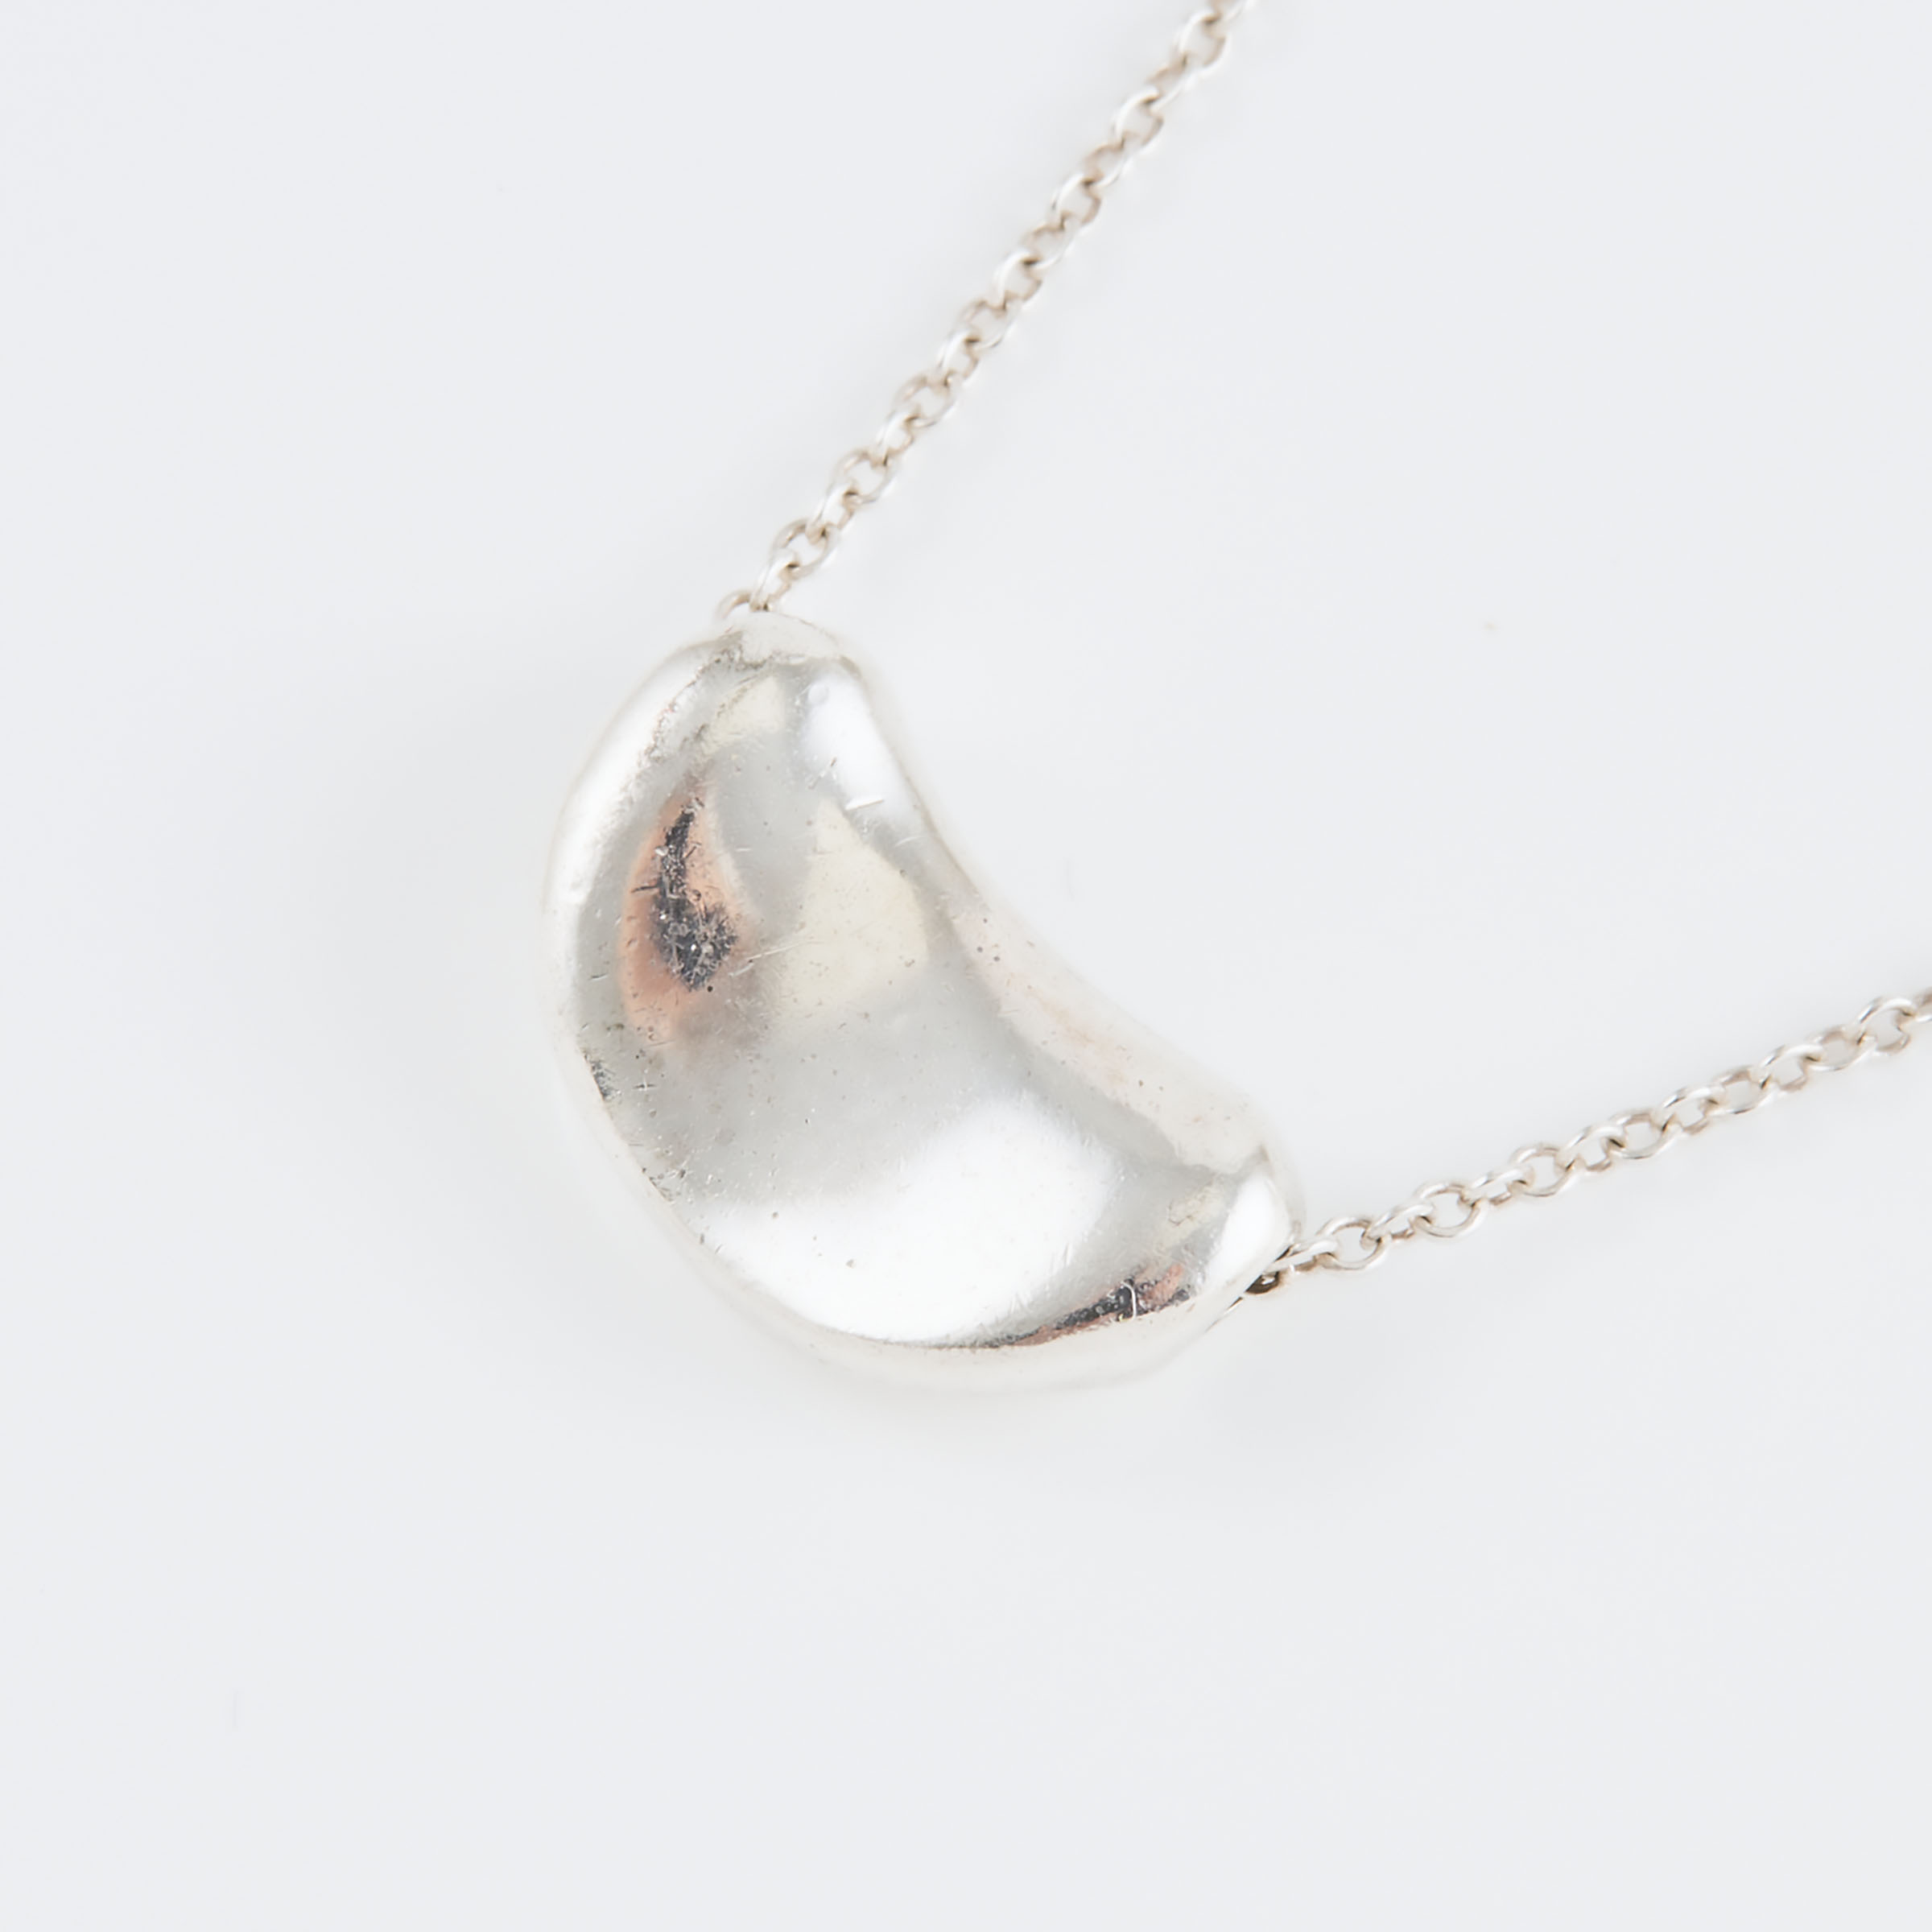 Tiffany & Co. Elsa Peretti Sterling Silver 'Bean' Pendant And Chain